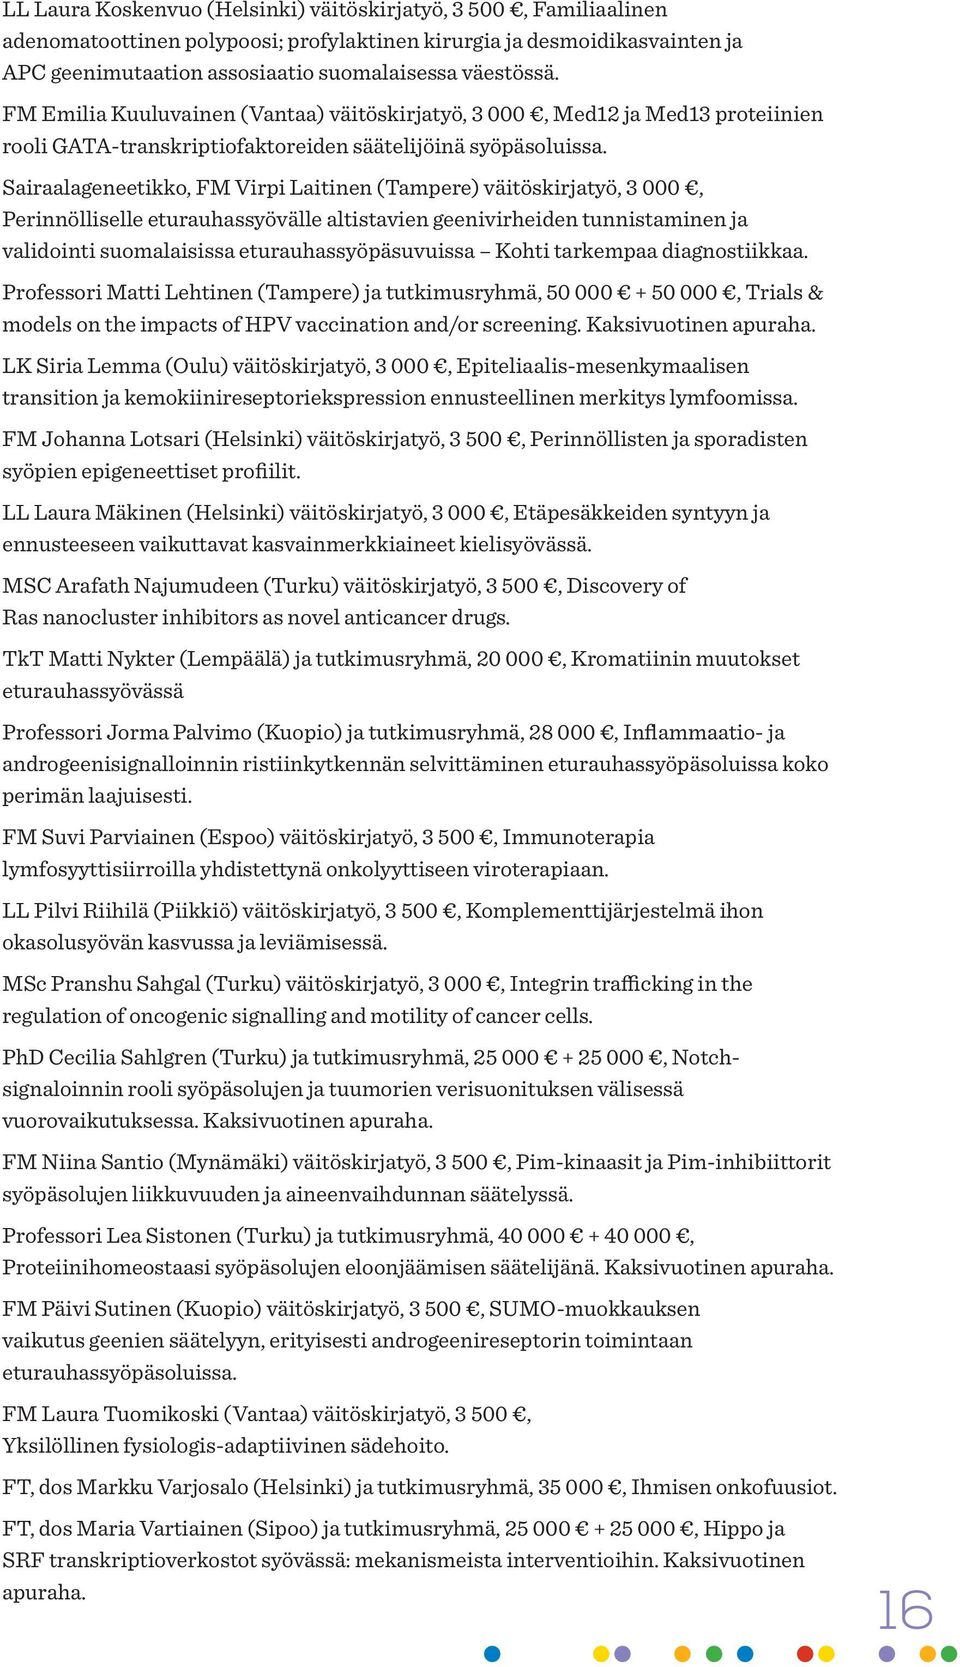 Sairaalageneetikko, FM Virpi Laitinen (Tampere) väitöskirjatyö, 3 000, Perinnölliselle eturauhassyövälle altistavien geenivirheiden tunnistaminen ja validointi suomalaisissa eturauhassyöpäsuvuissa